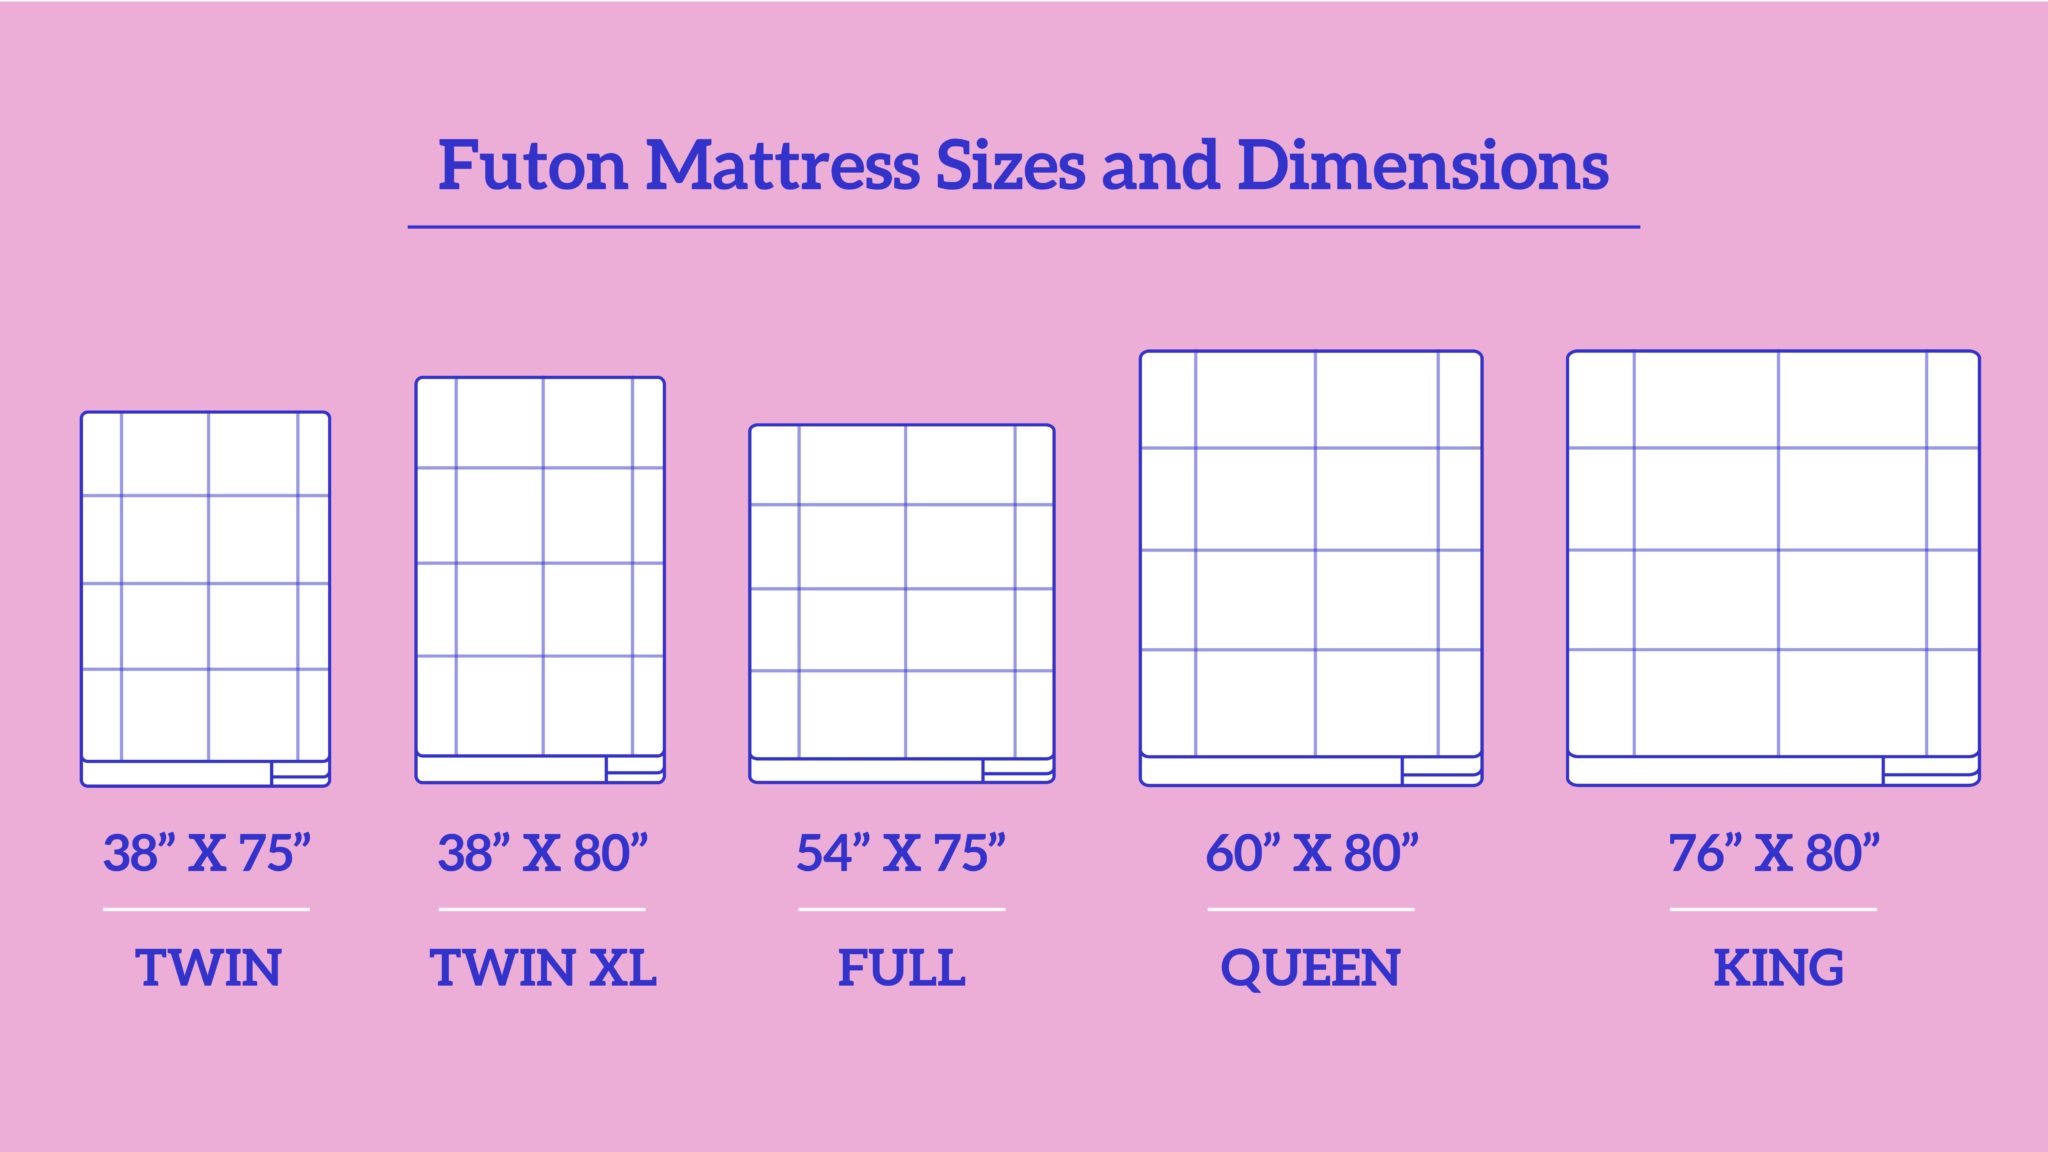 actual mattress sizes of futon mattresses